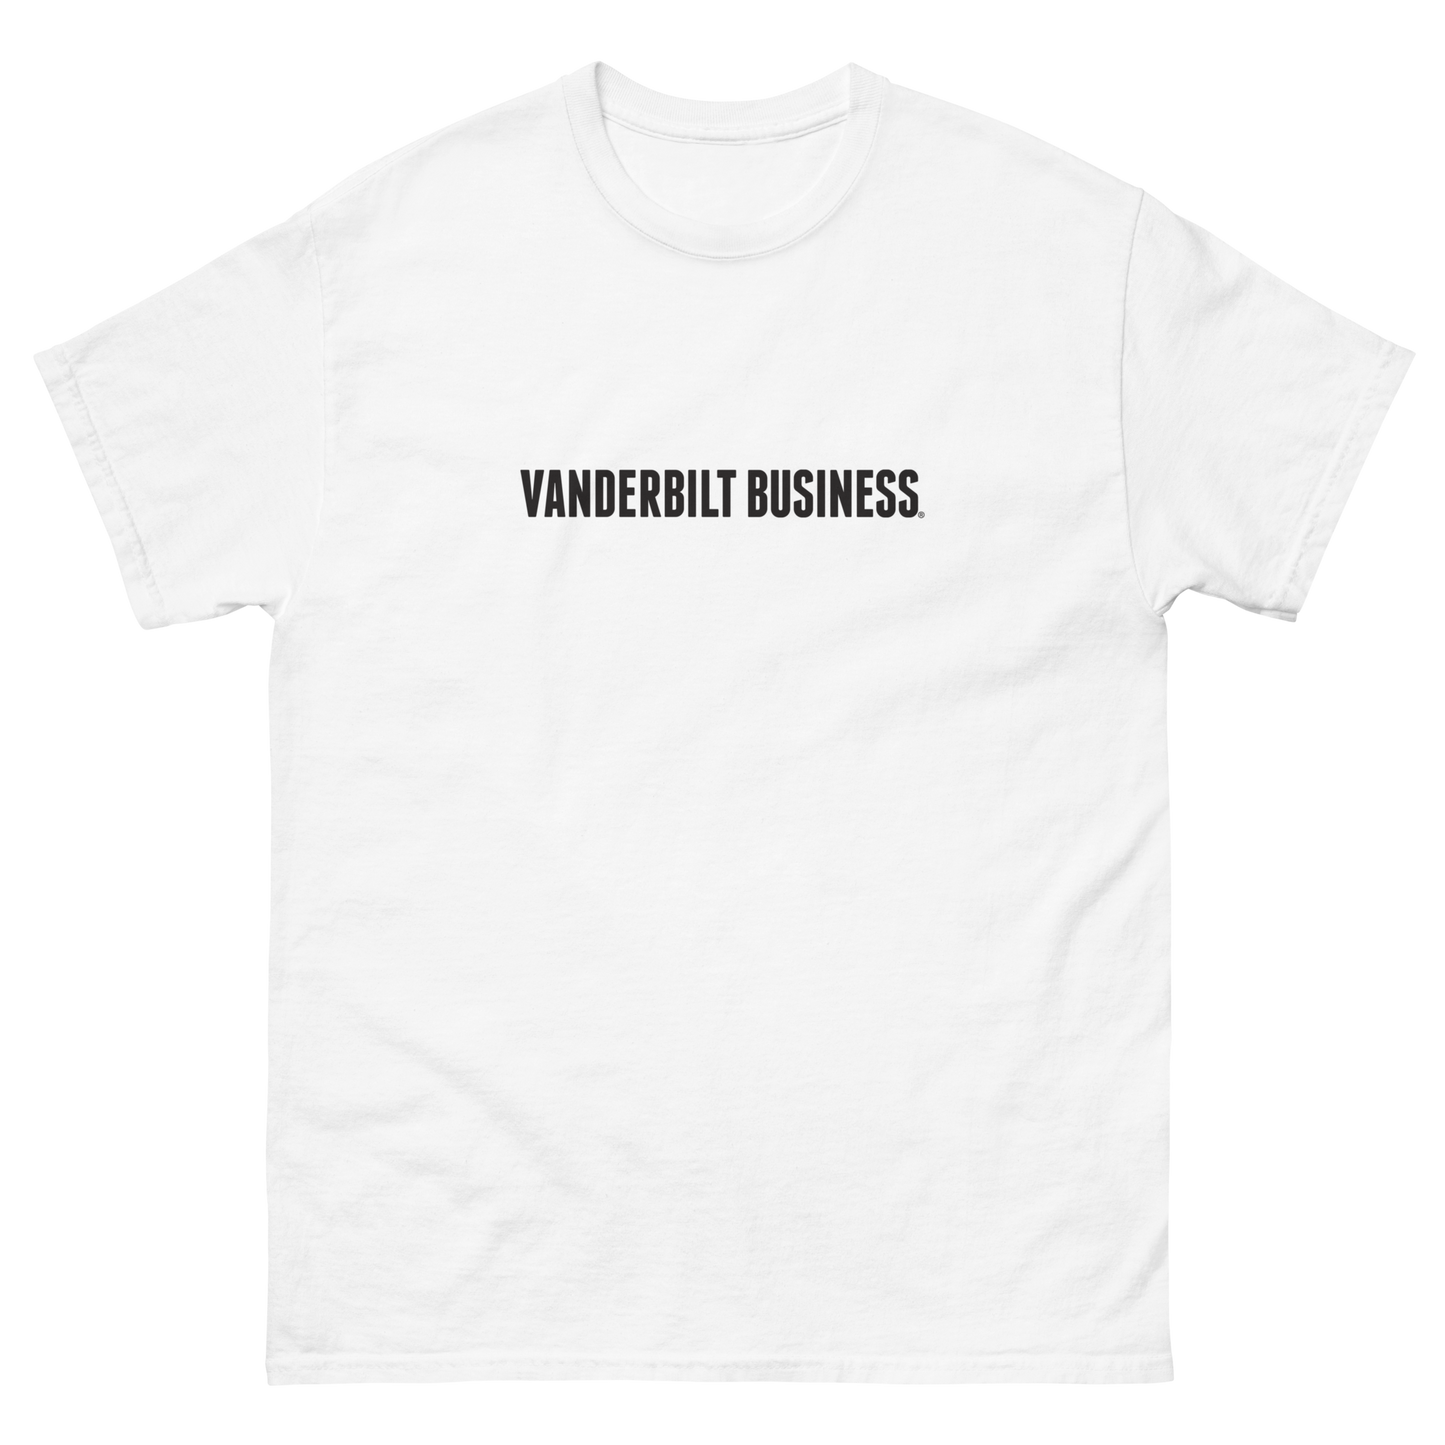 Vanderbilt Business Classic Tee